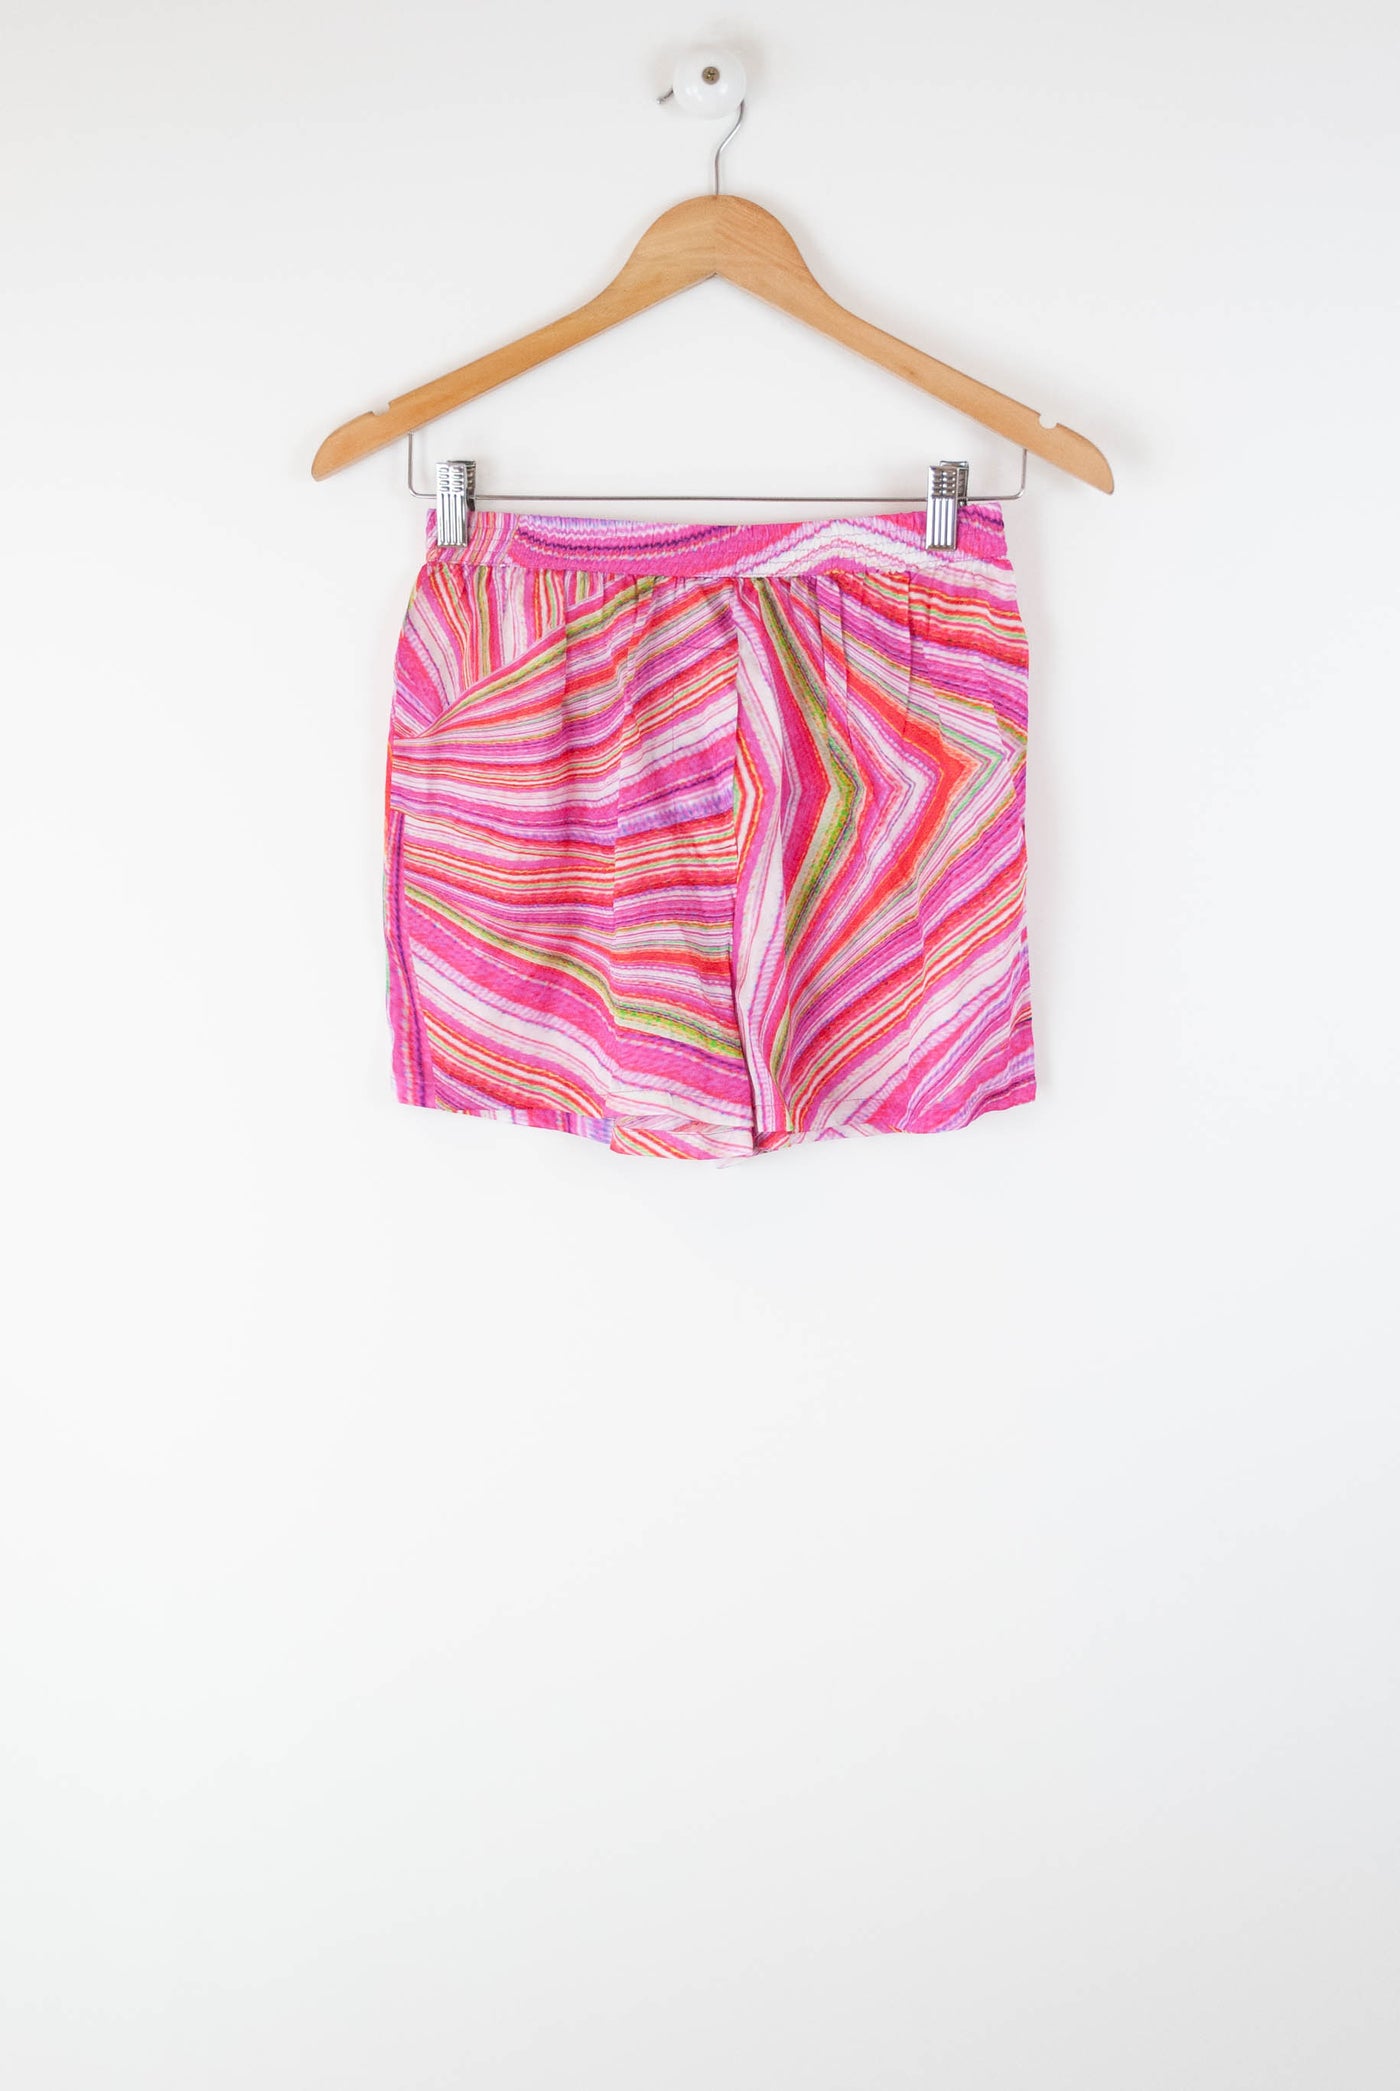 Pantalón corto rosa con colores